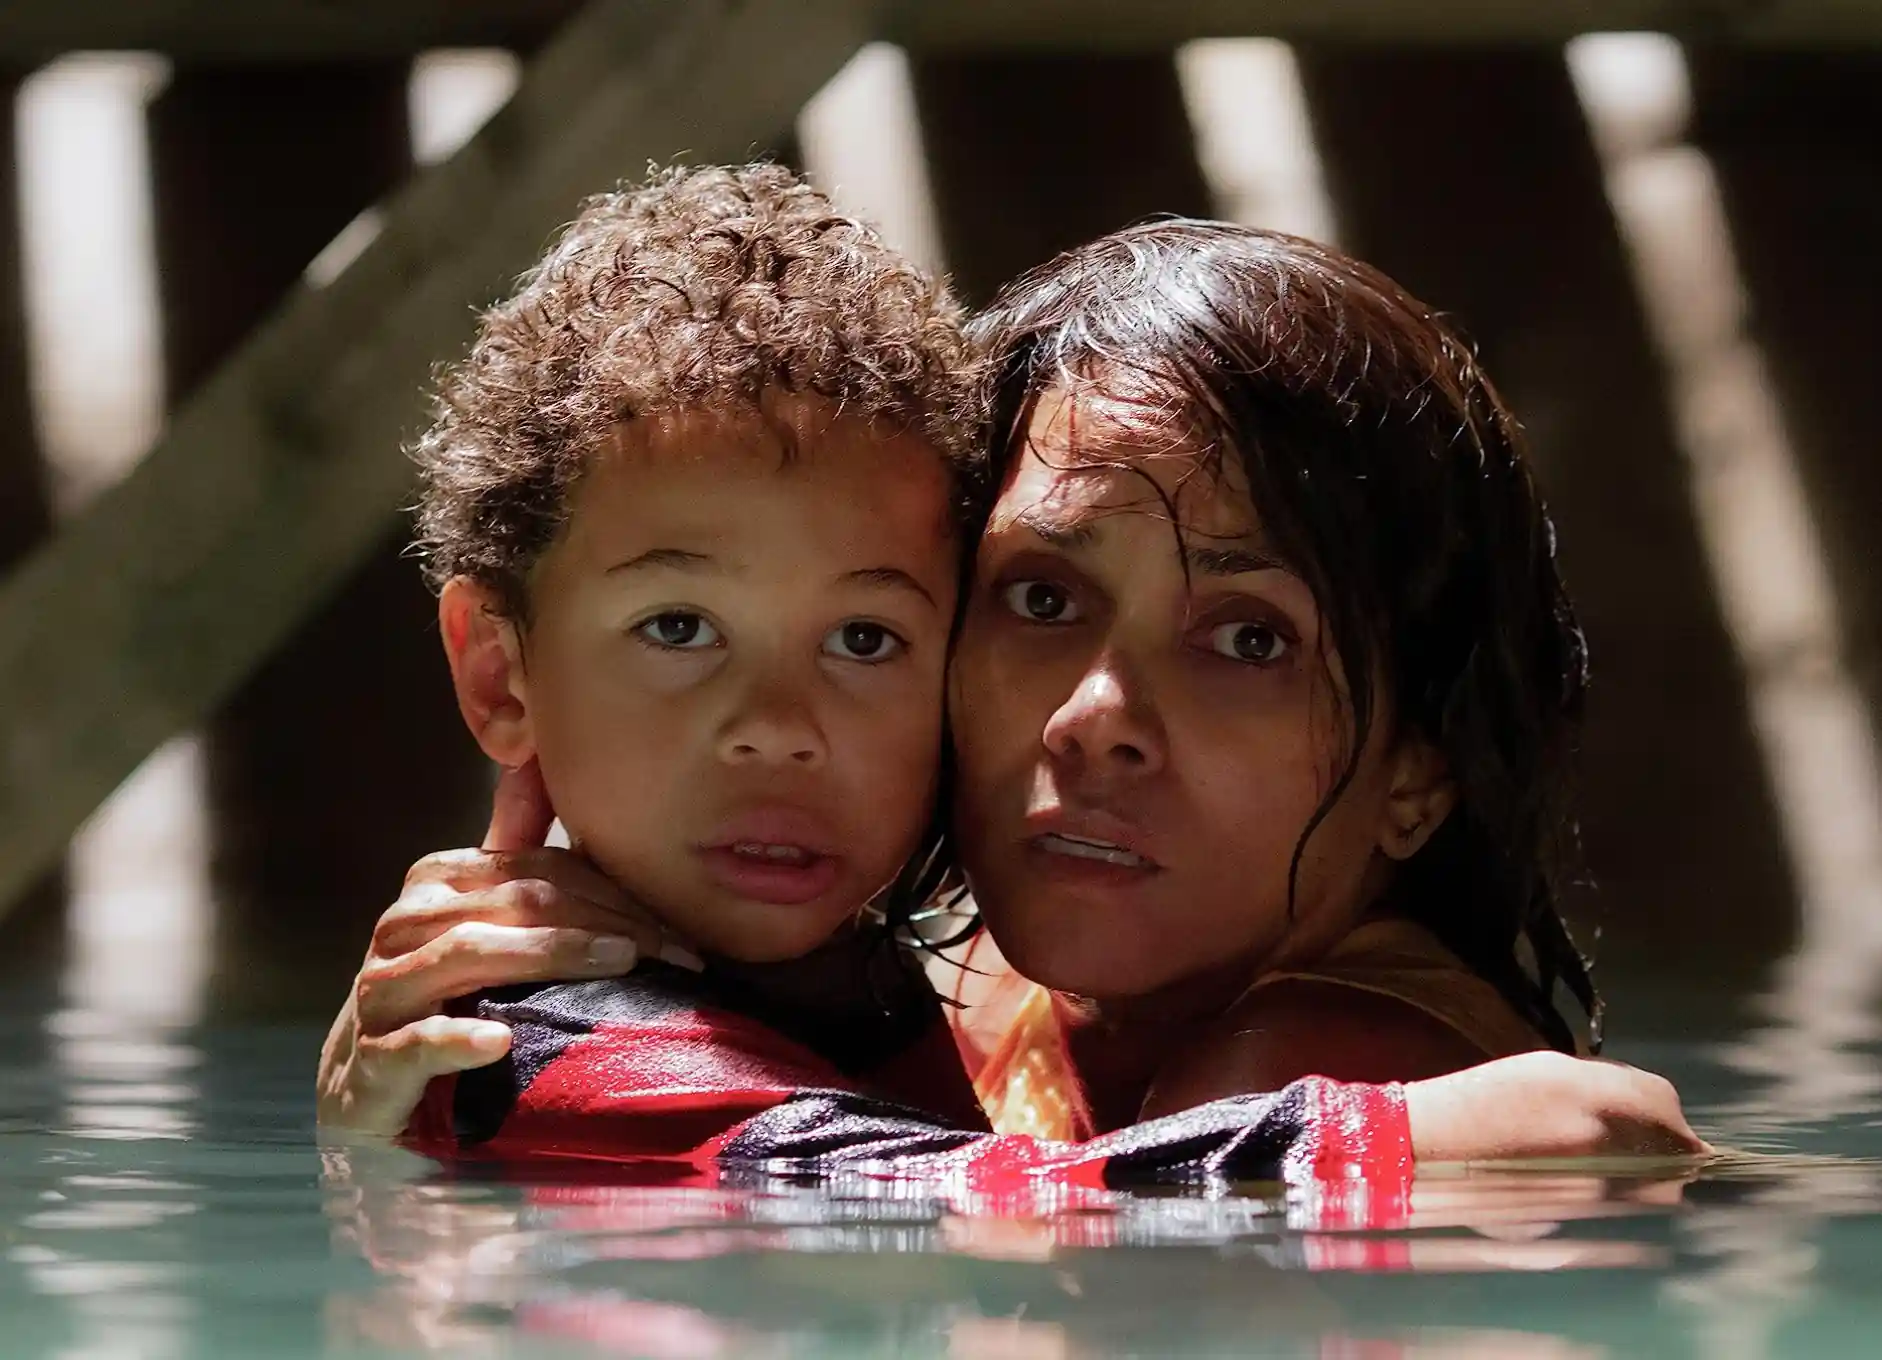 Sinopsis Film Kidnap: Kisah Seorang Ibu Mencari Anaknya yang Hilang